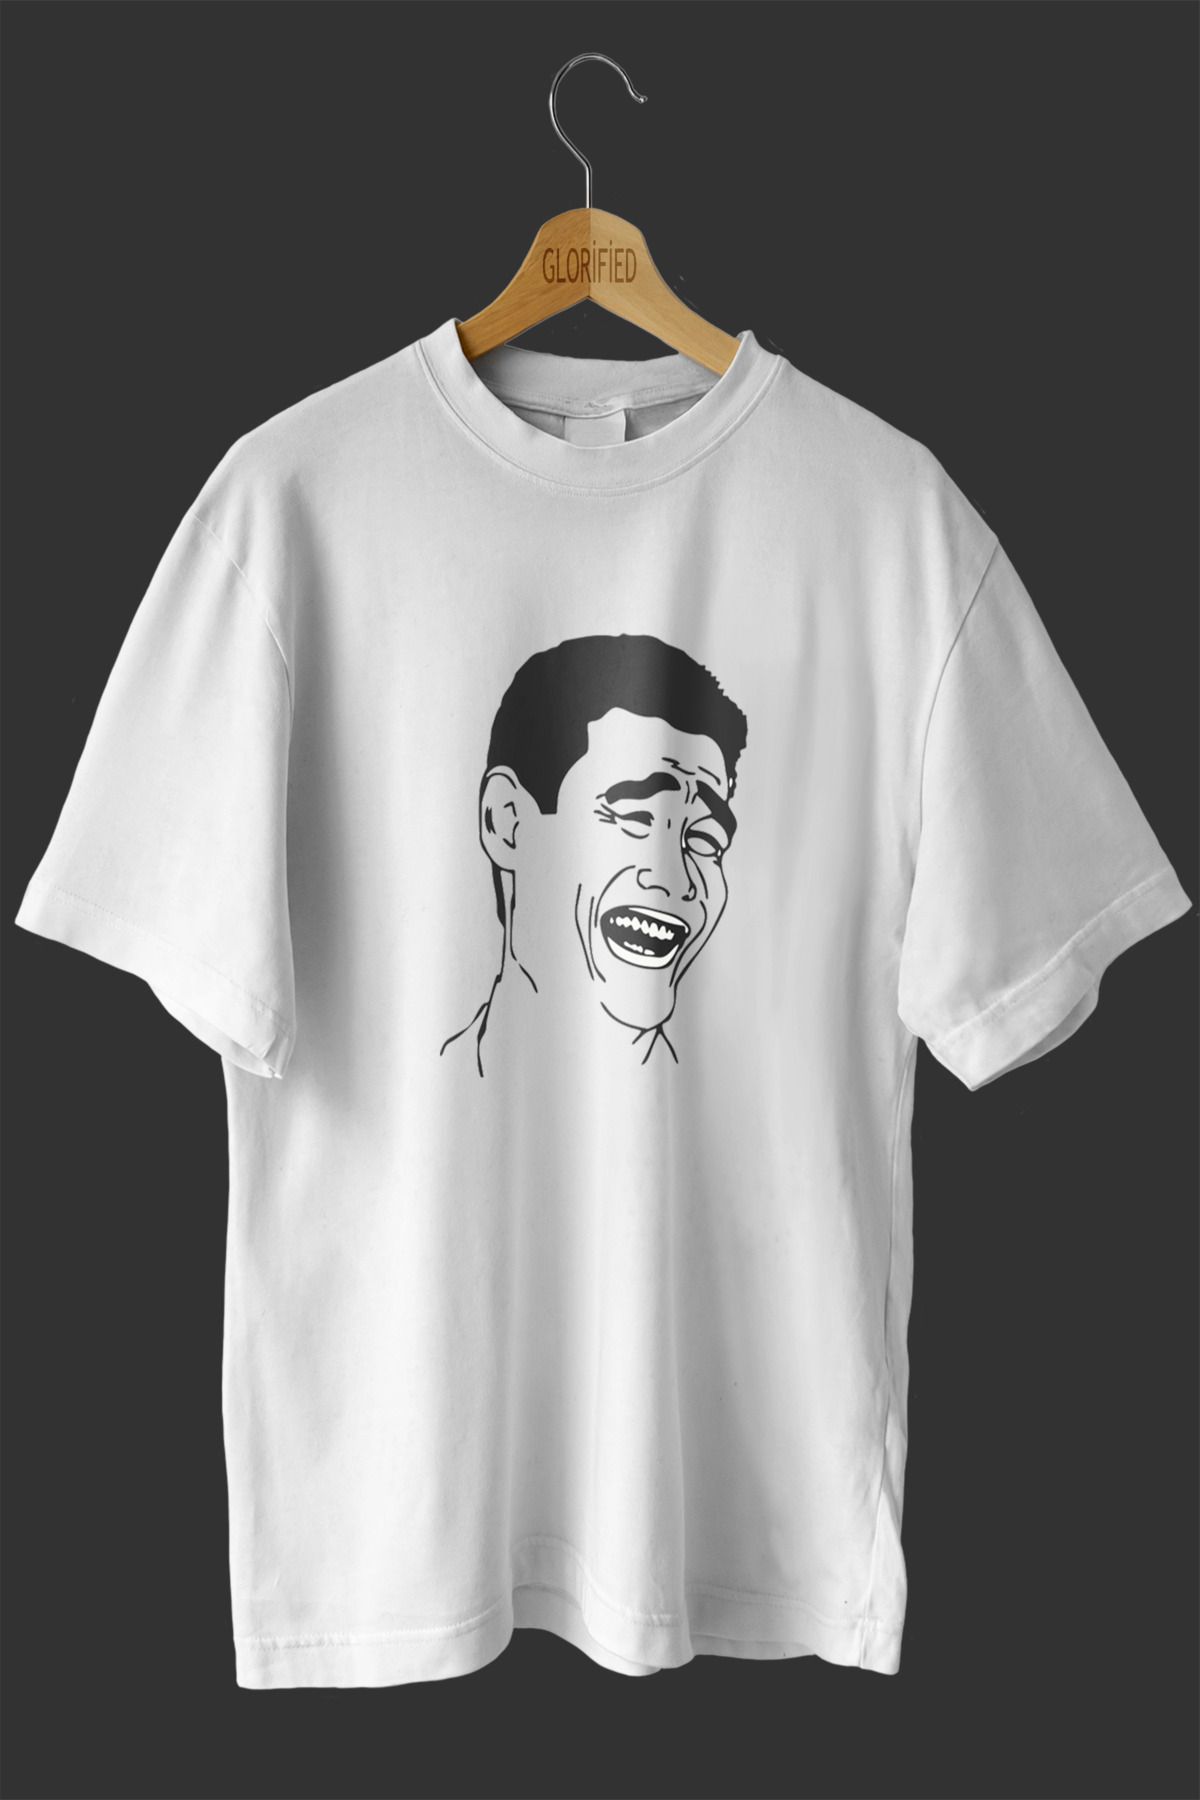 CB MAN COLLECTİON Çok Komik Tasarım Baskılı Oversize T-shirt ( Tişört )